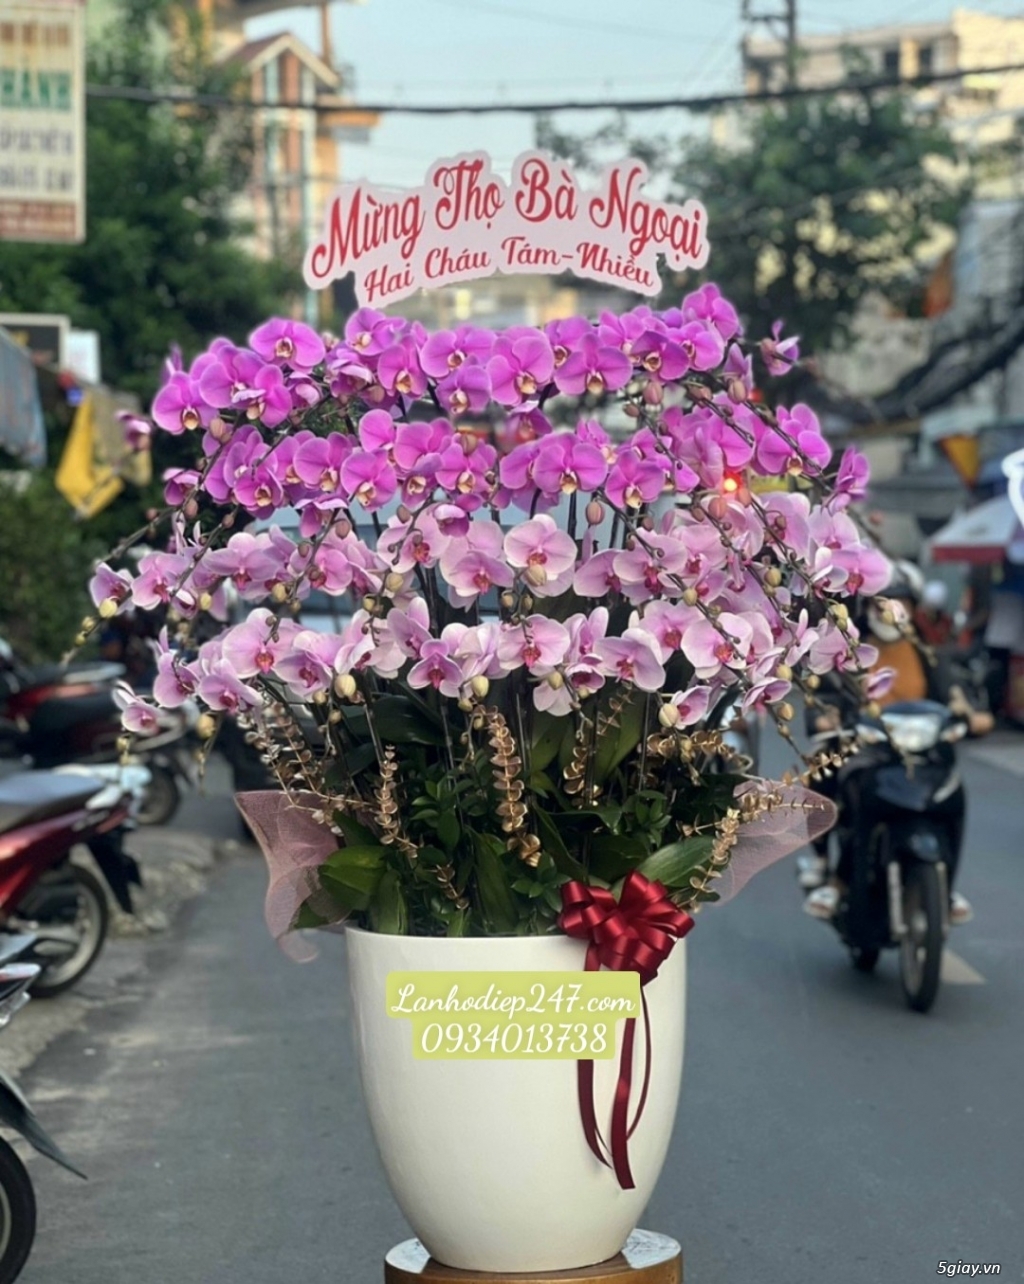 Shop hoa tuoi 24/7 tphcm phục vụ hoa lan hồ điệp uy tín toàn quốc - 19